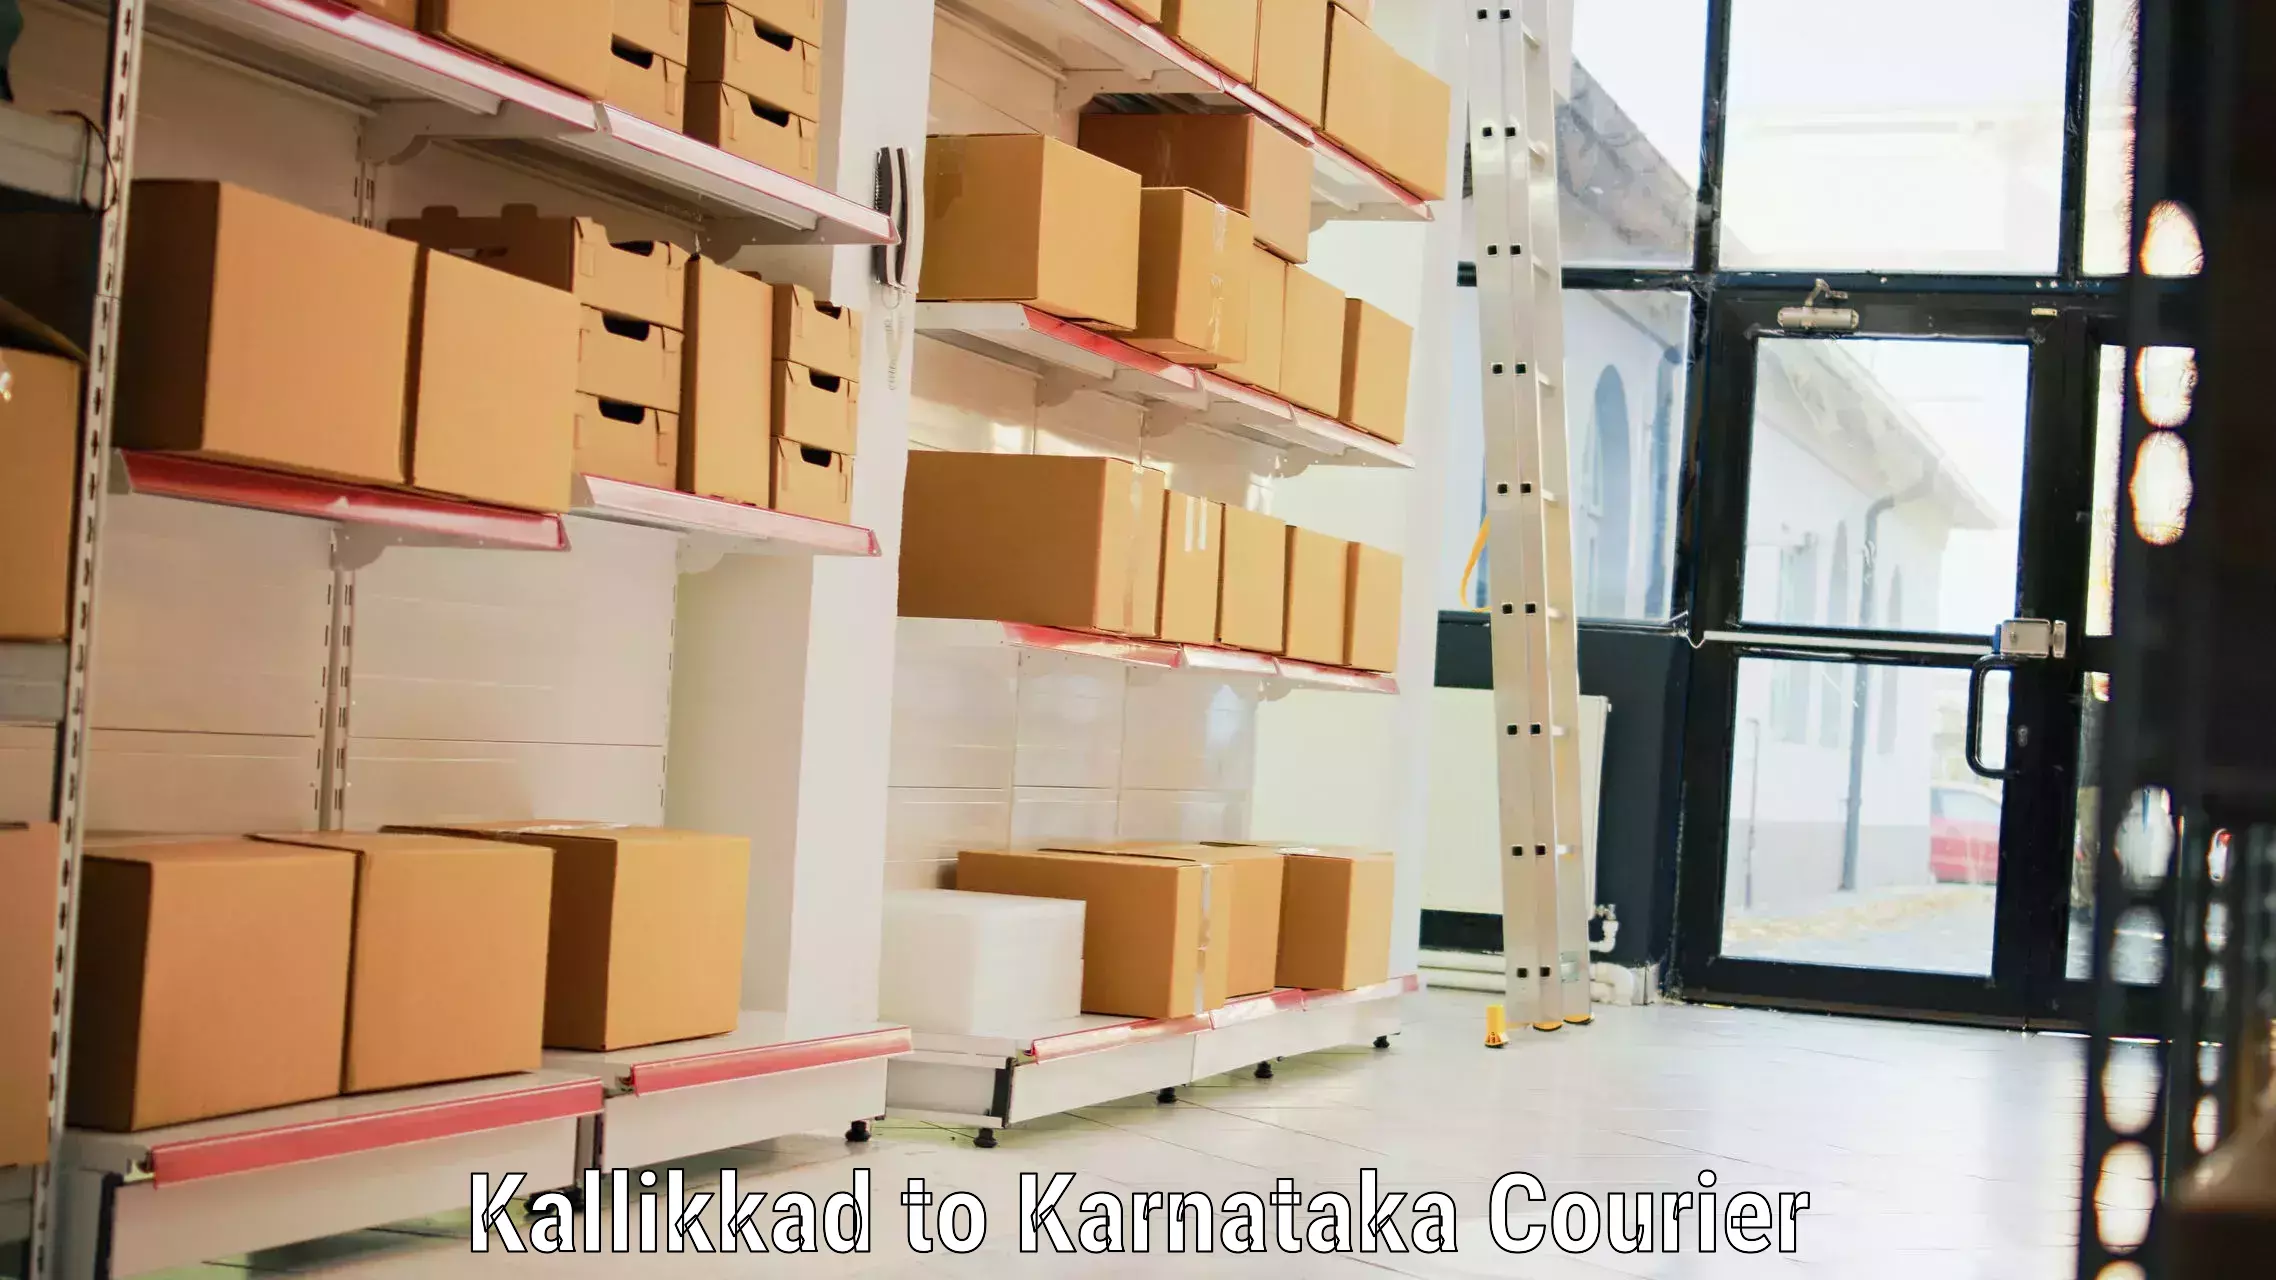 Online luggage shipping booking Kallikkad to Karnataka